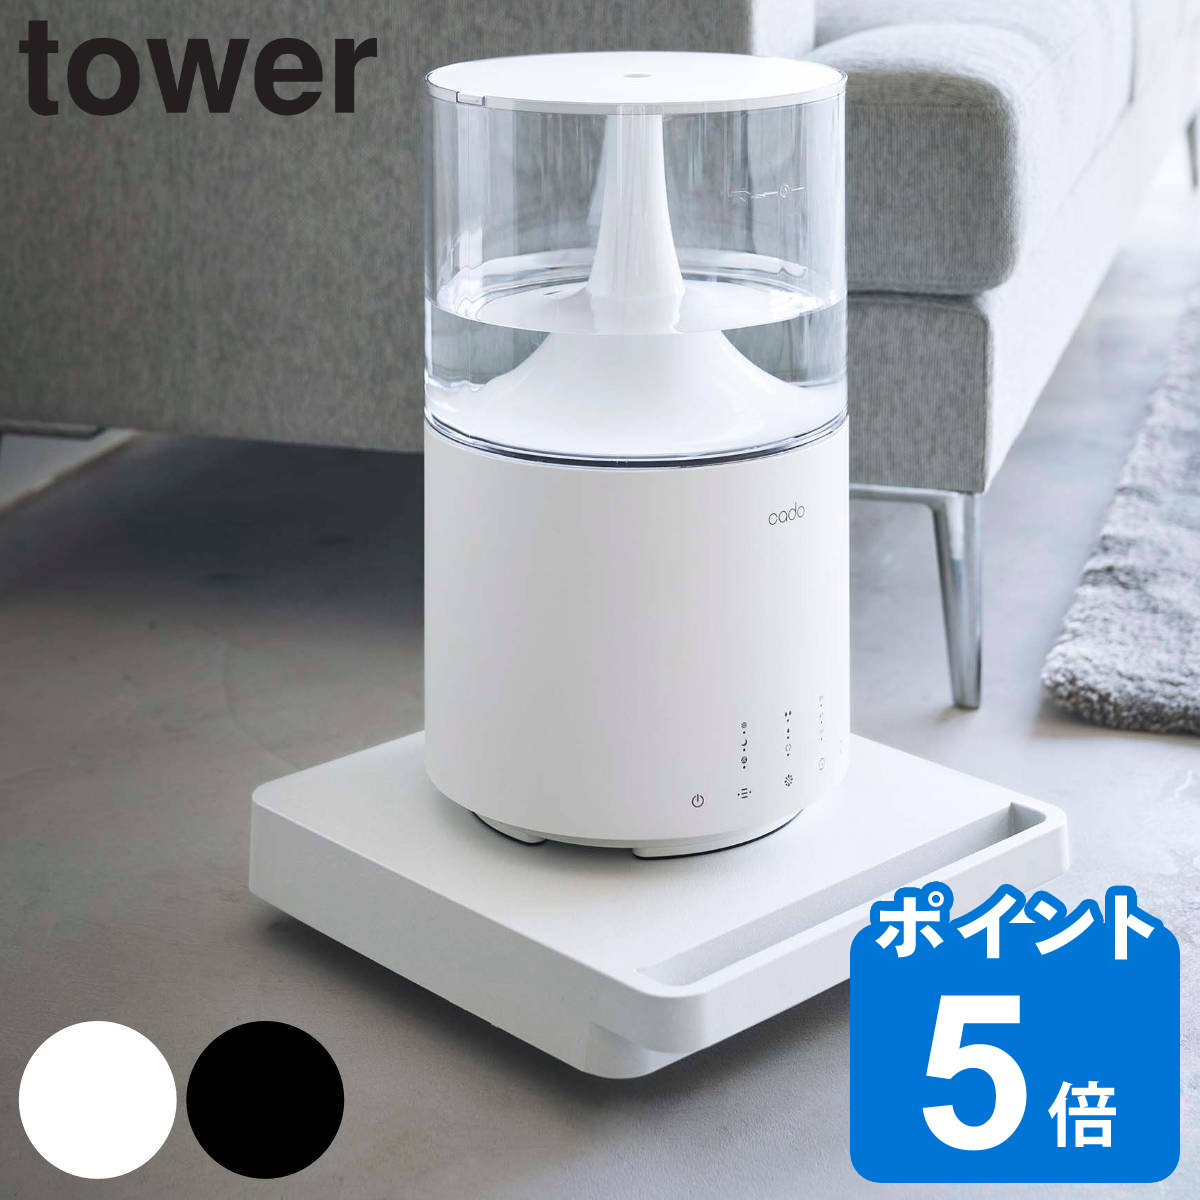 tower 自立する台車 タワー 正方形